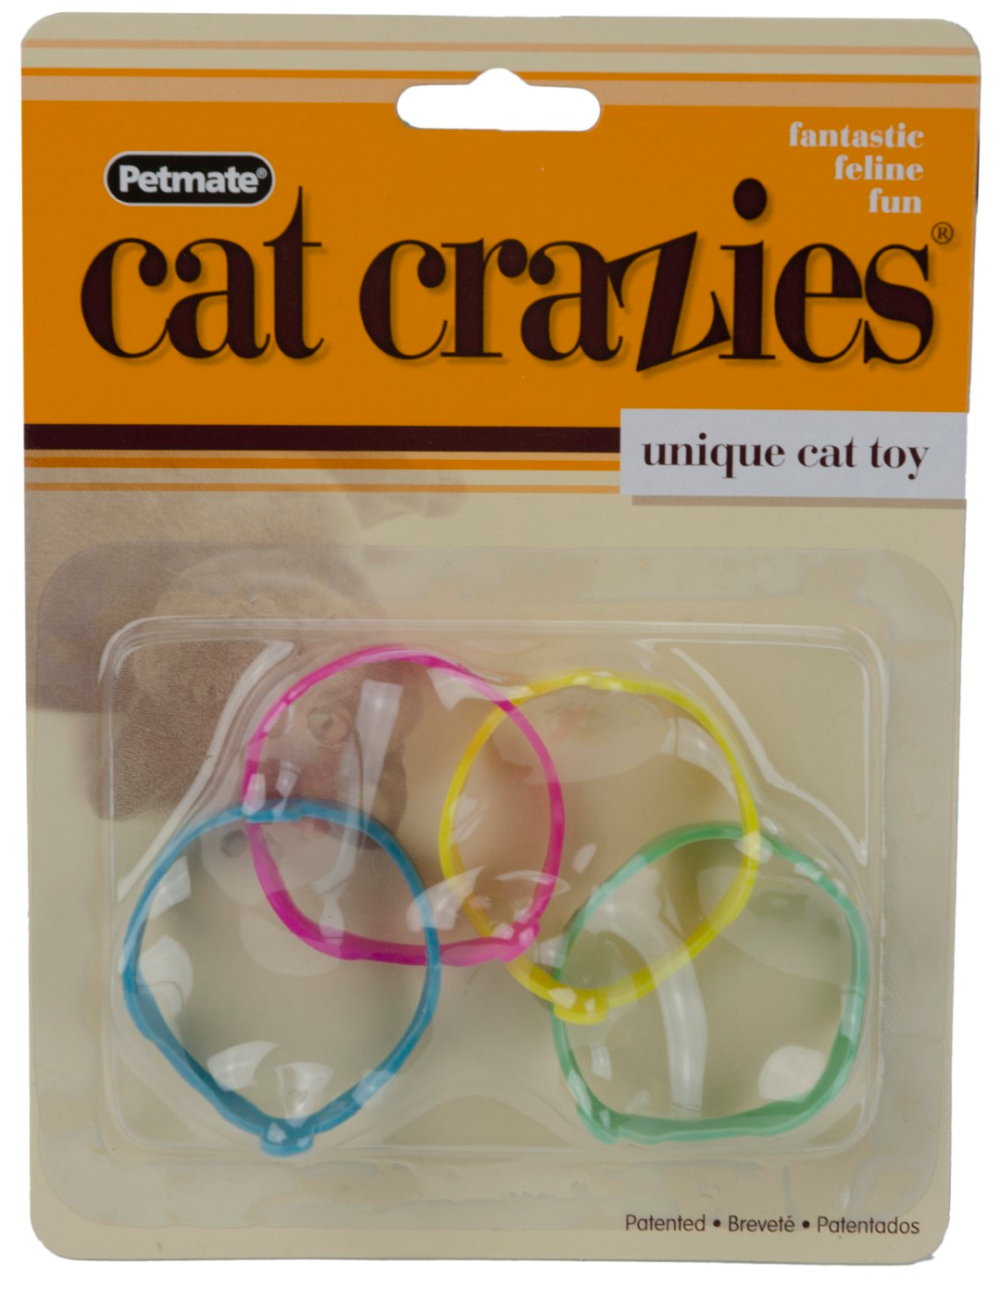 FatCat Cat Crazies Bracelets (multicolor) 4st